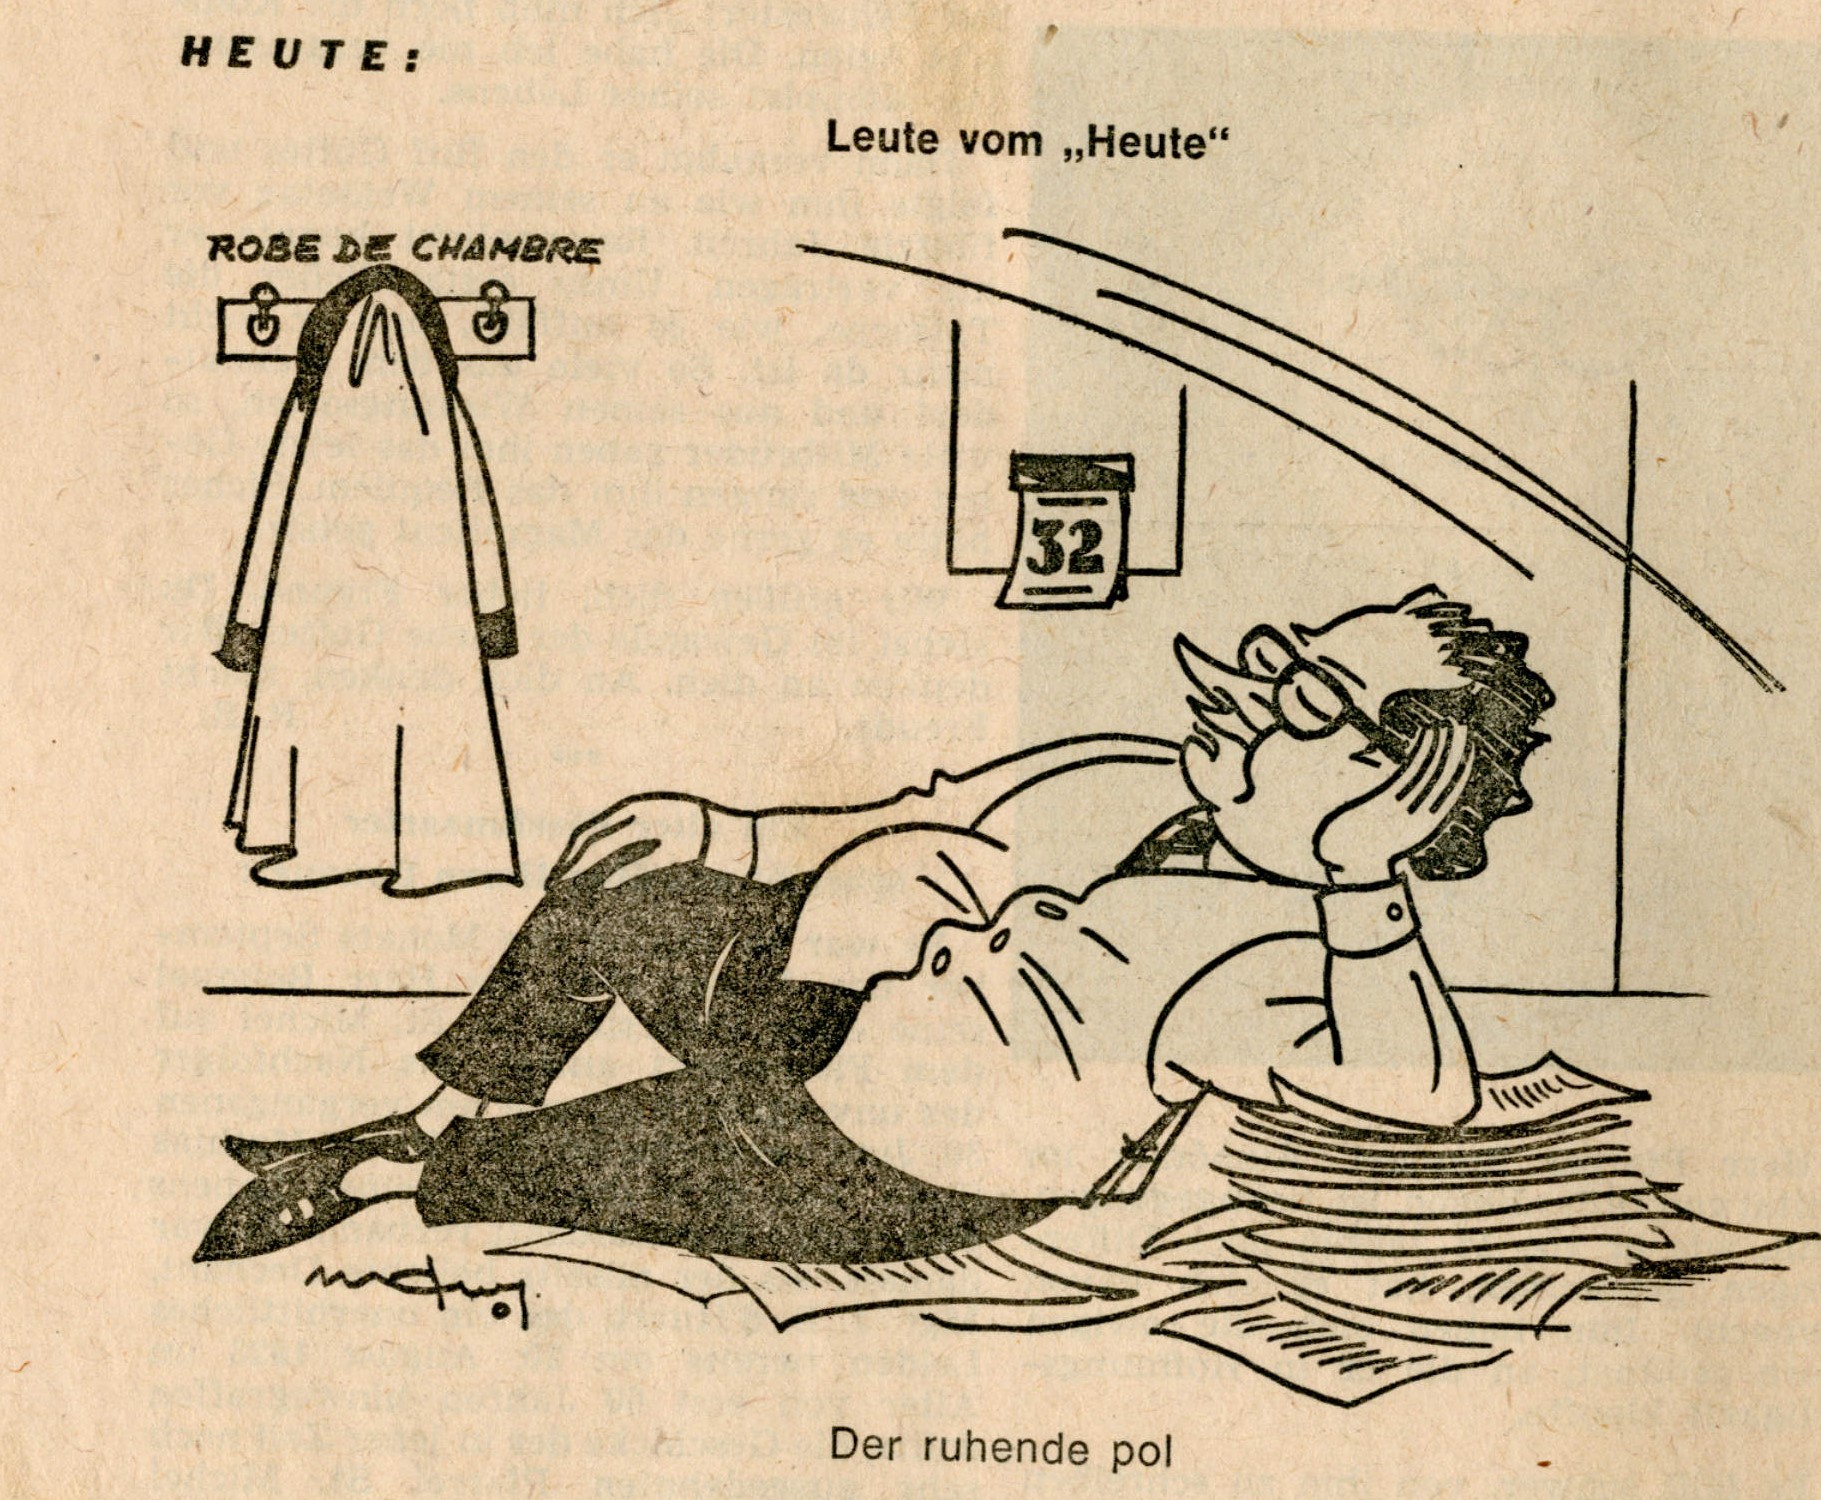 
					
						Karikatur: Marcel Weyland. In: Luxemburger Wort 1970
					
					
					© Marcel Weyland/Luxemburger Wort
					